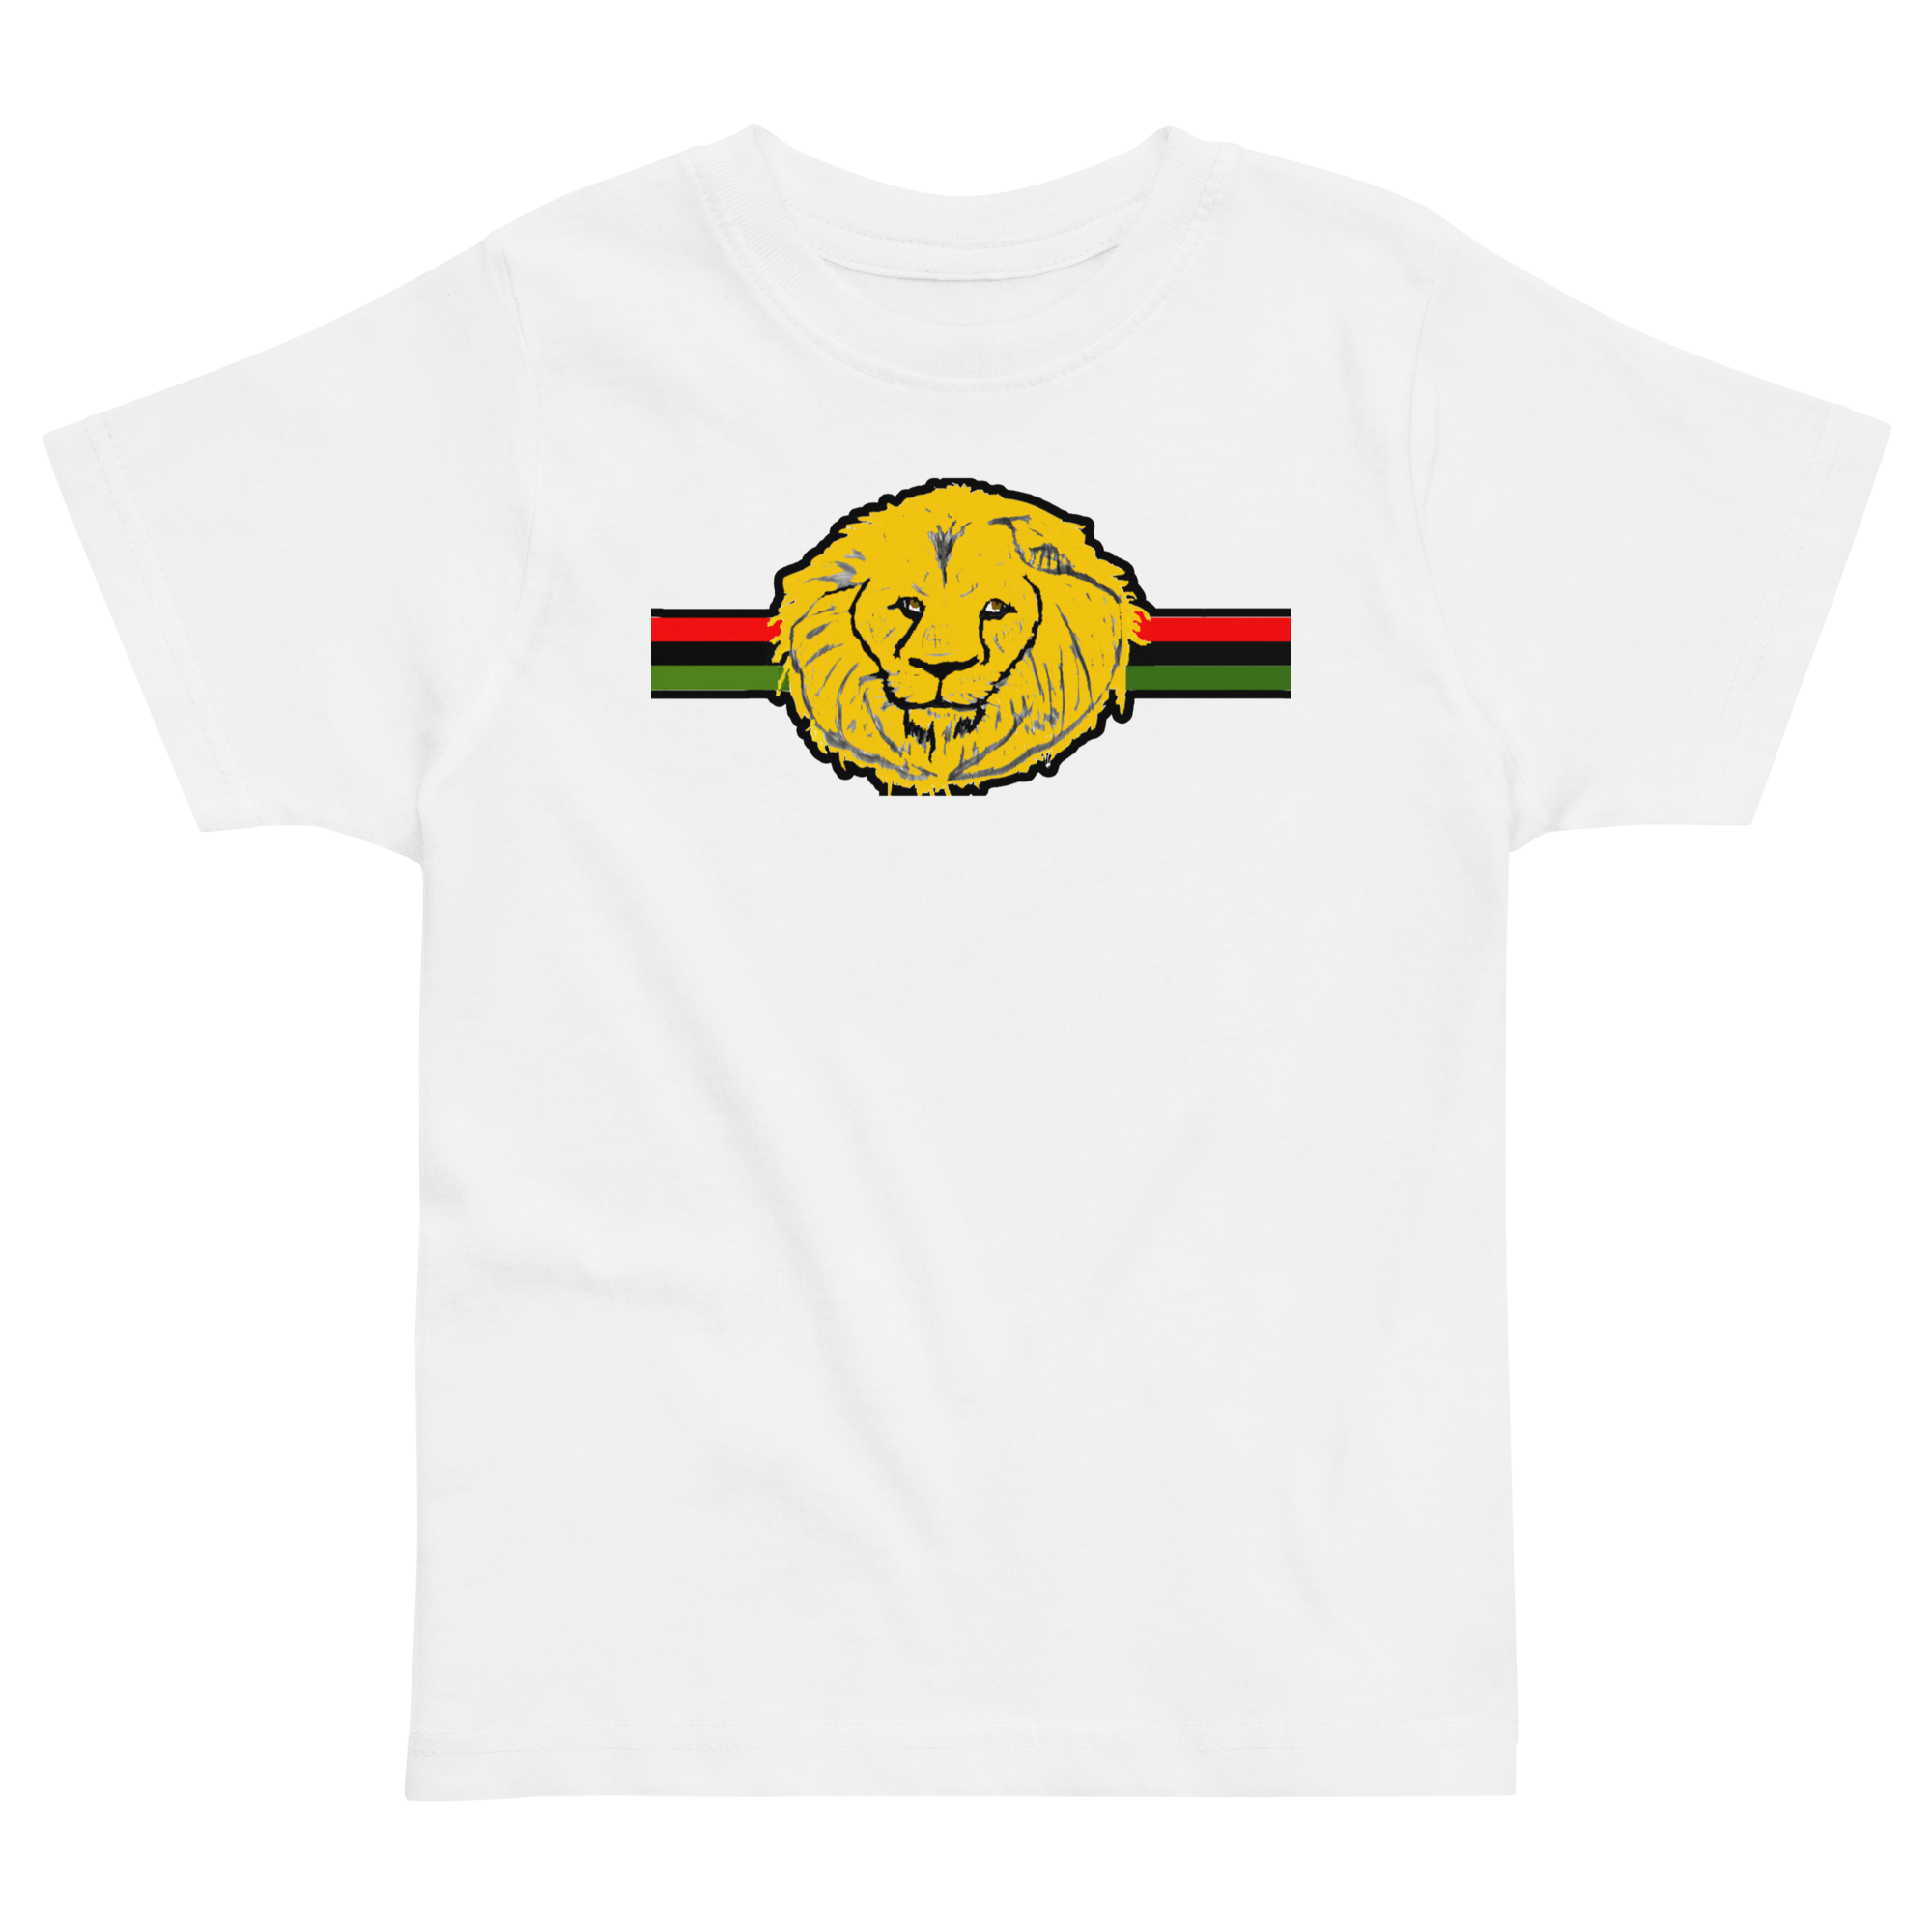 Lion head Toddler jersey t-shirt